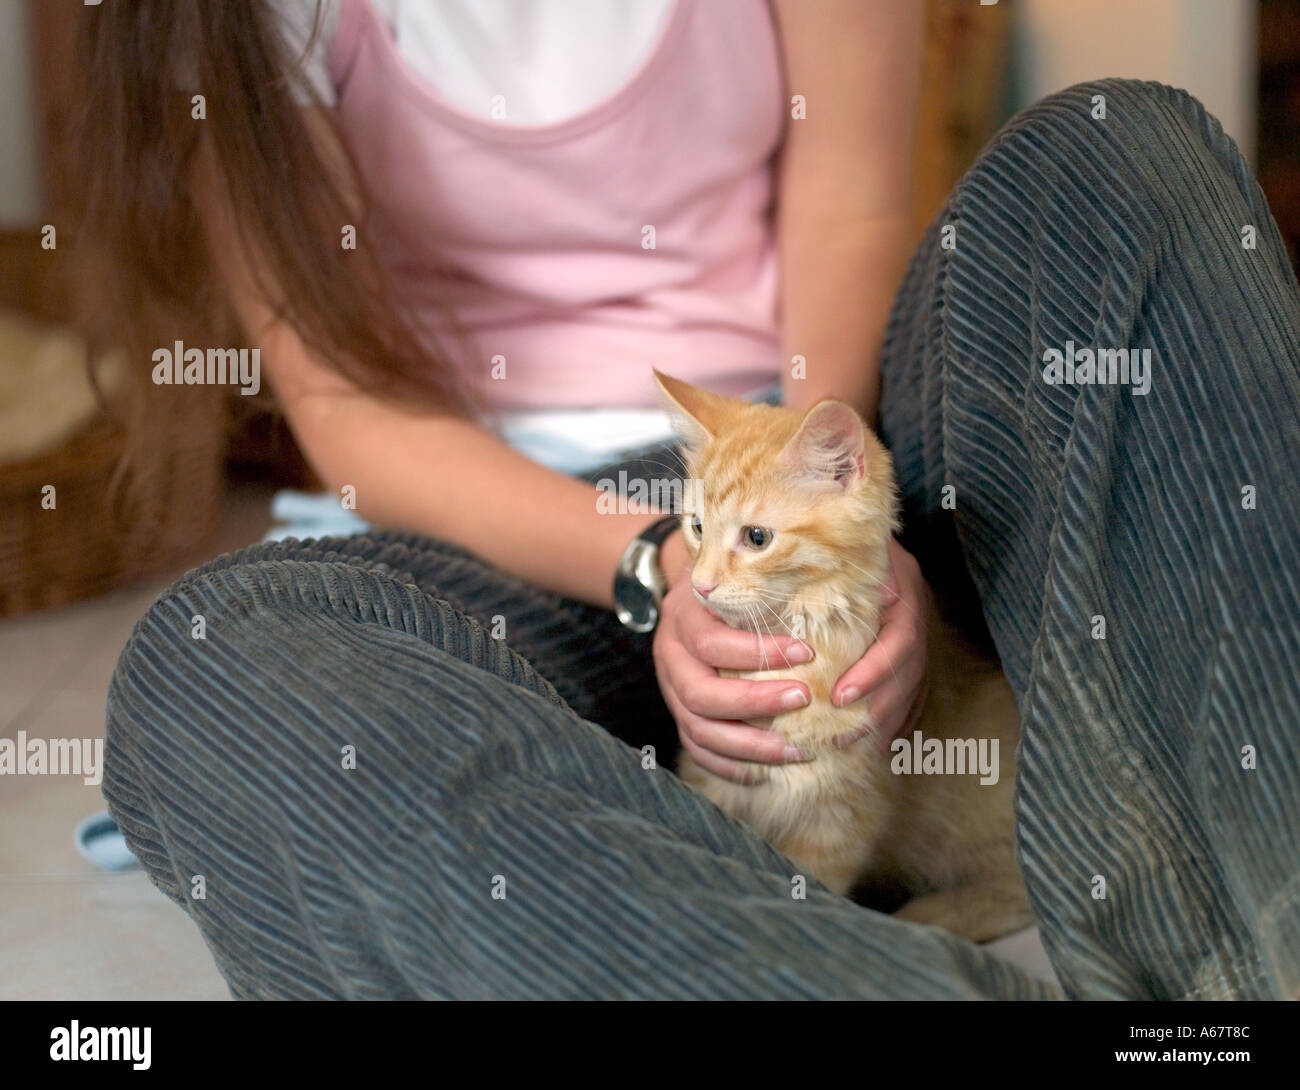 young girl holding ginger kitten Stock Photo